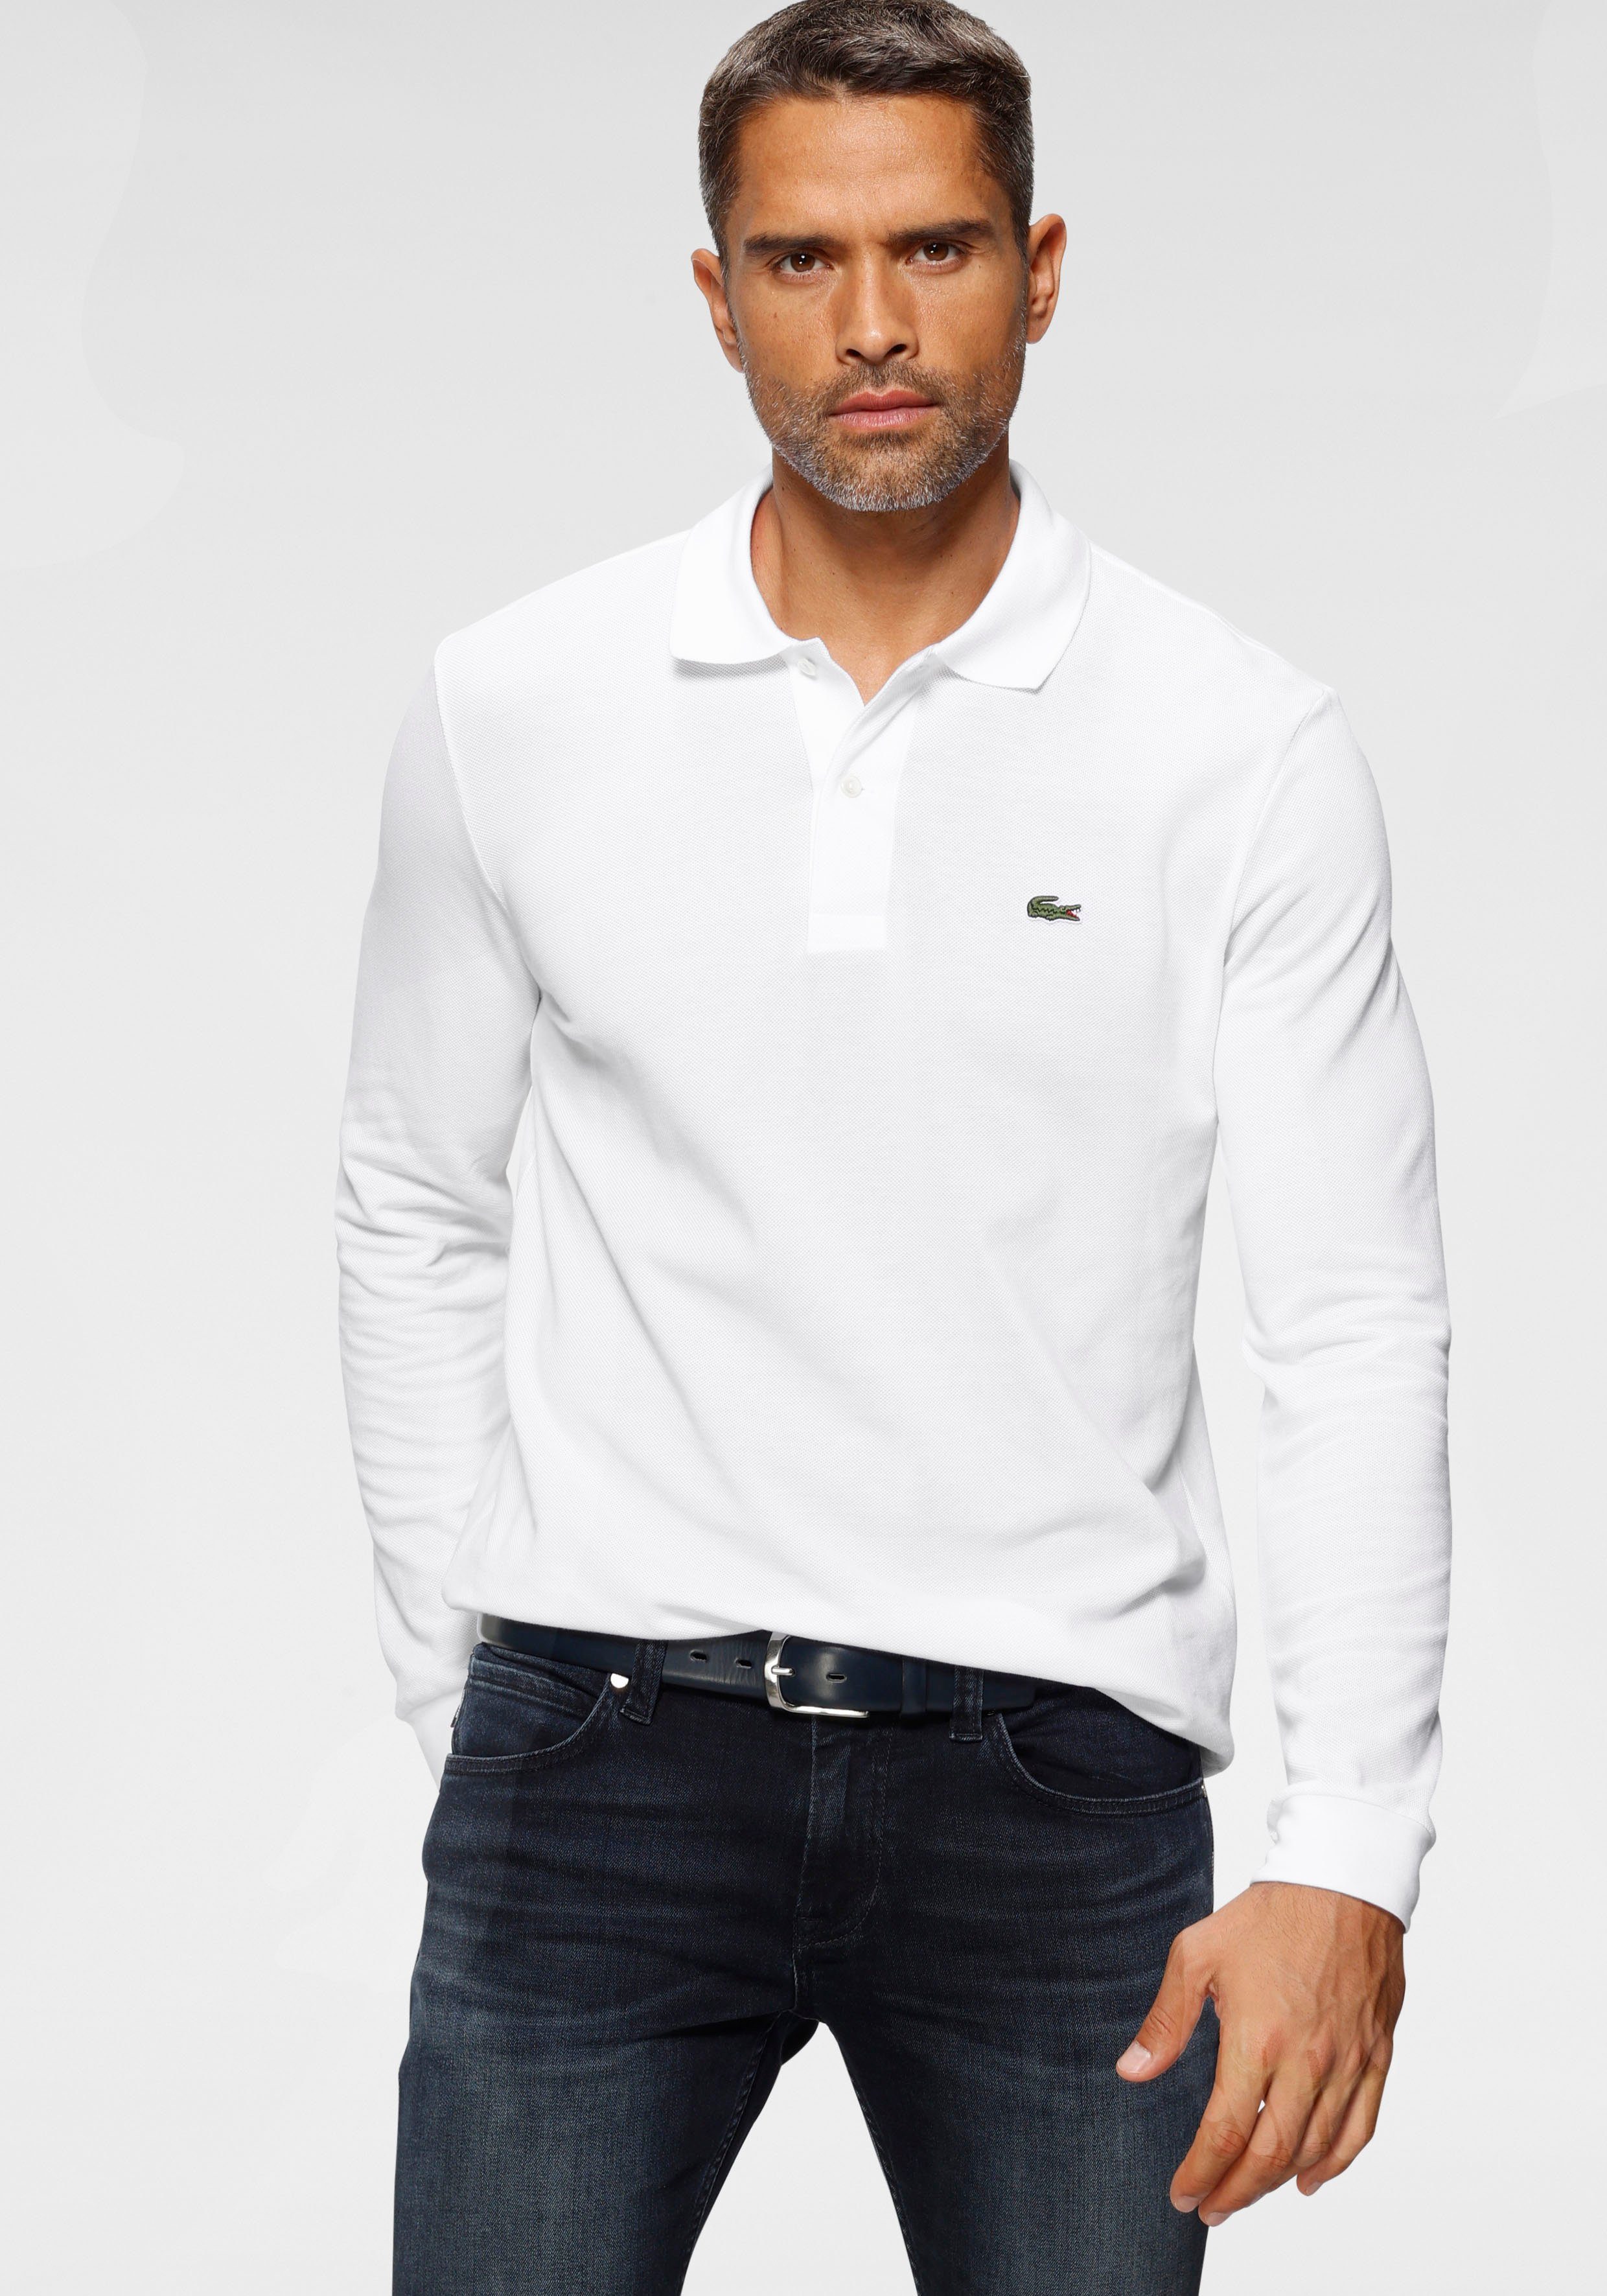 Basic weiß Lacoste Style Langarm-Poloshirt